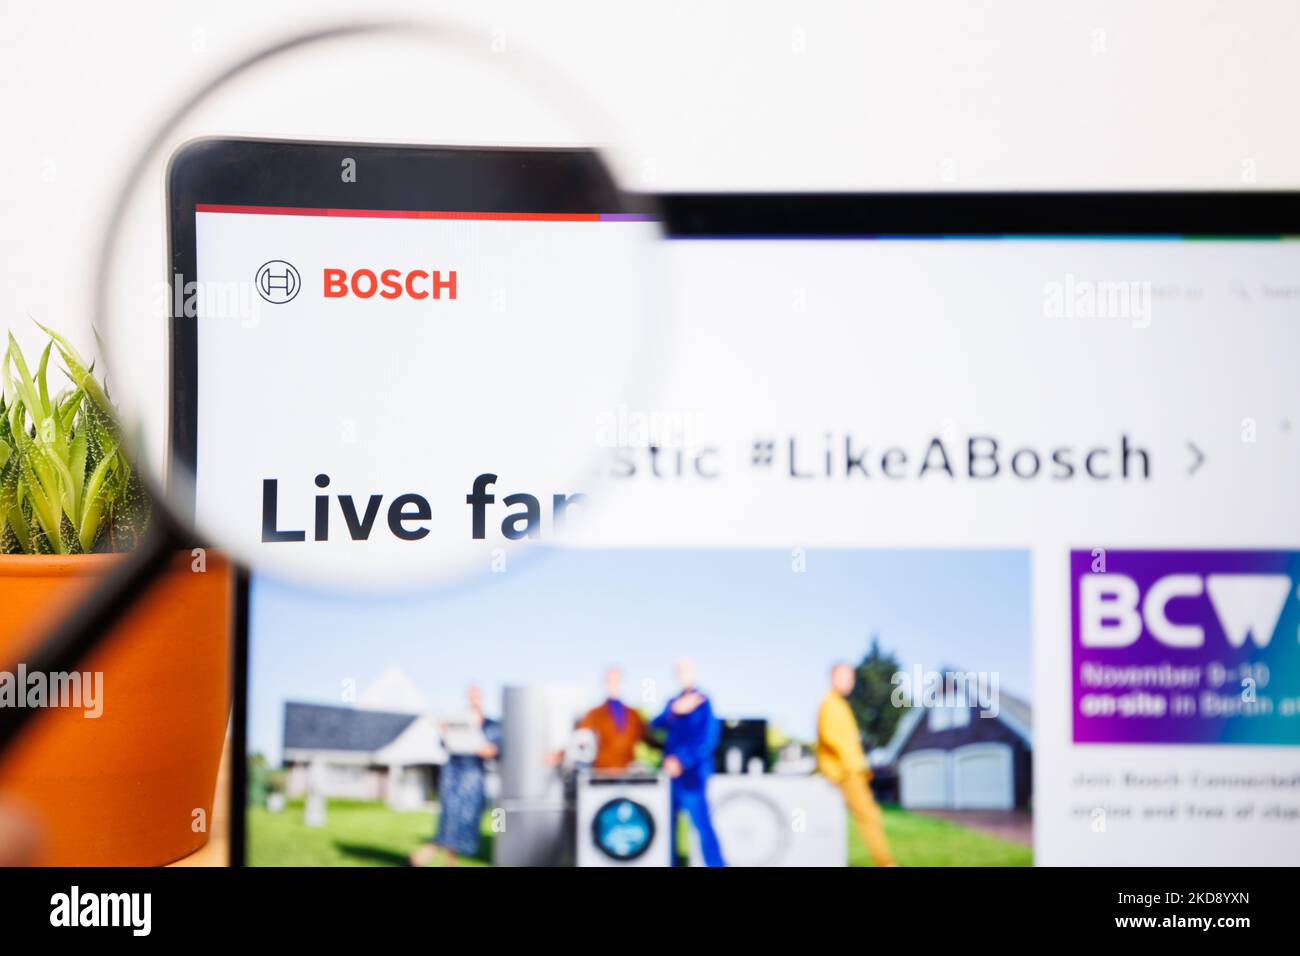 Un logotipo de bosch bajo una lupa. Sitio Web de bosch en la pantalla del portátil Foto de stock